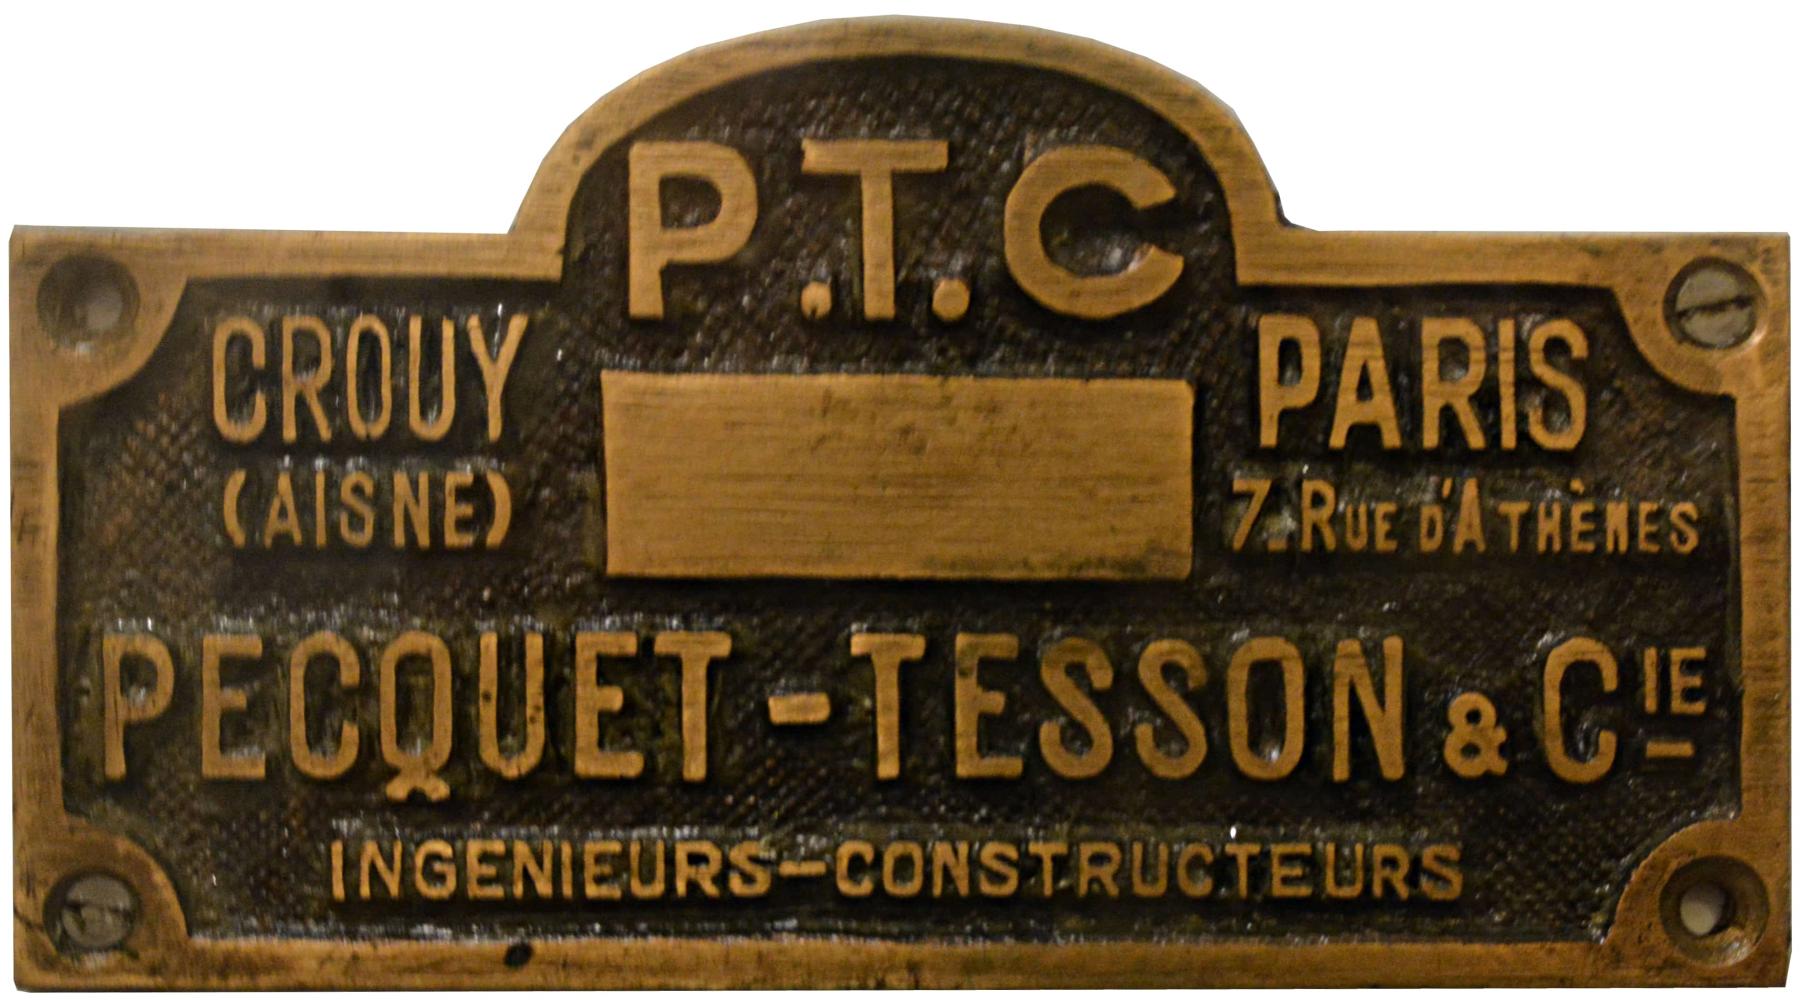 Pecquet Tesson et Cie